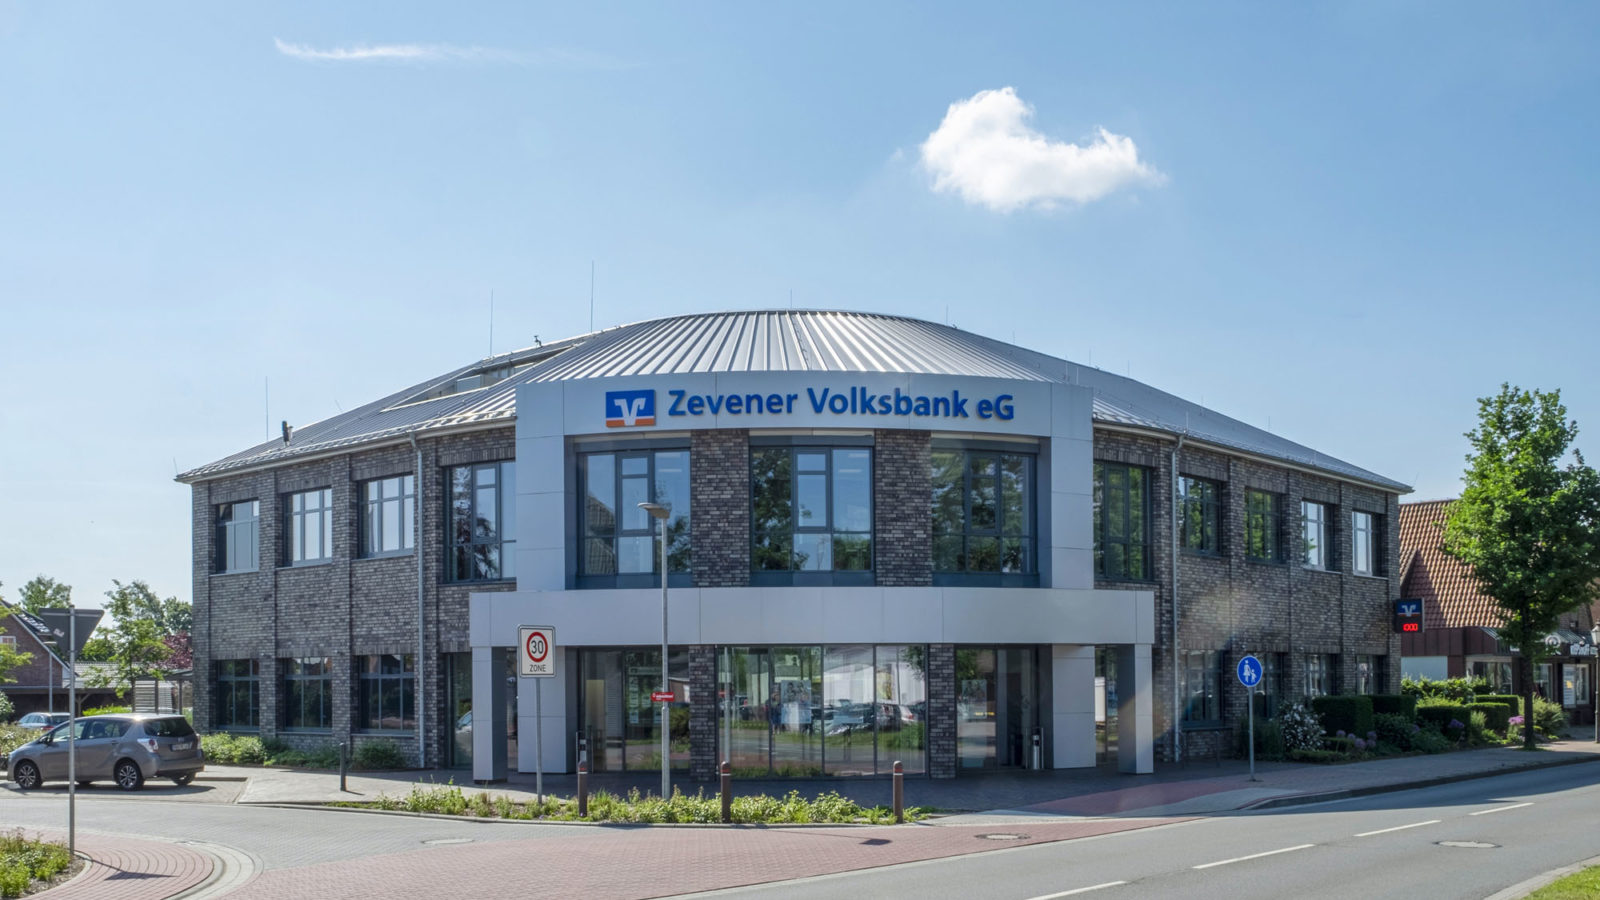 Agency from the Zevener Volksbank EG